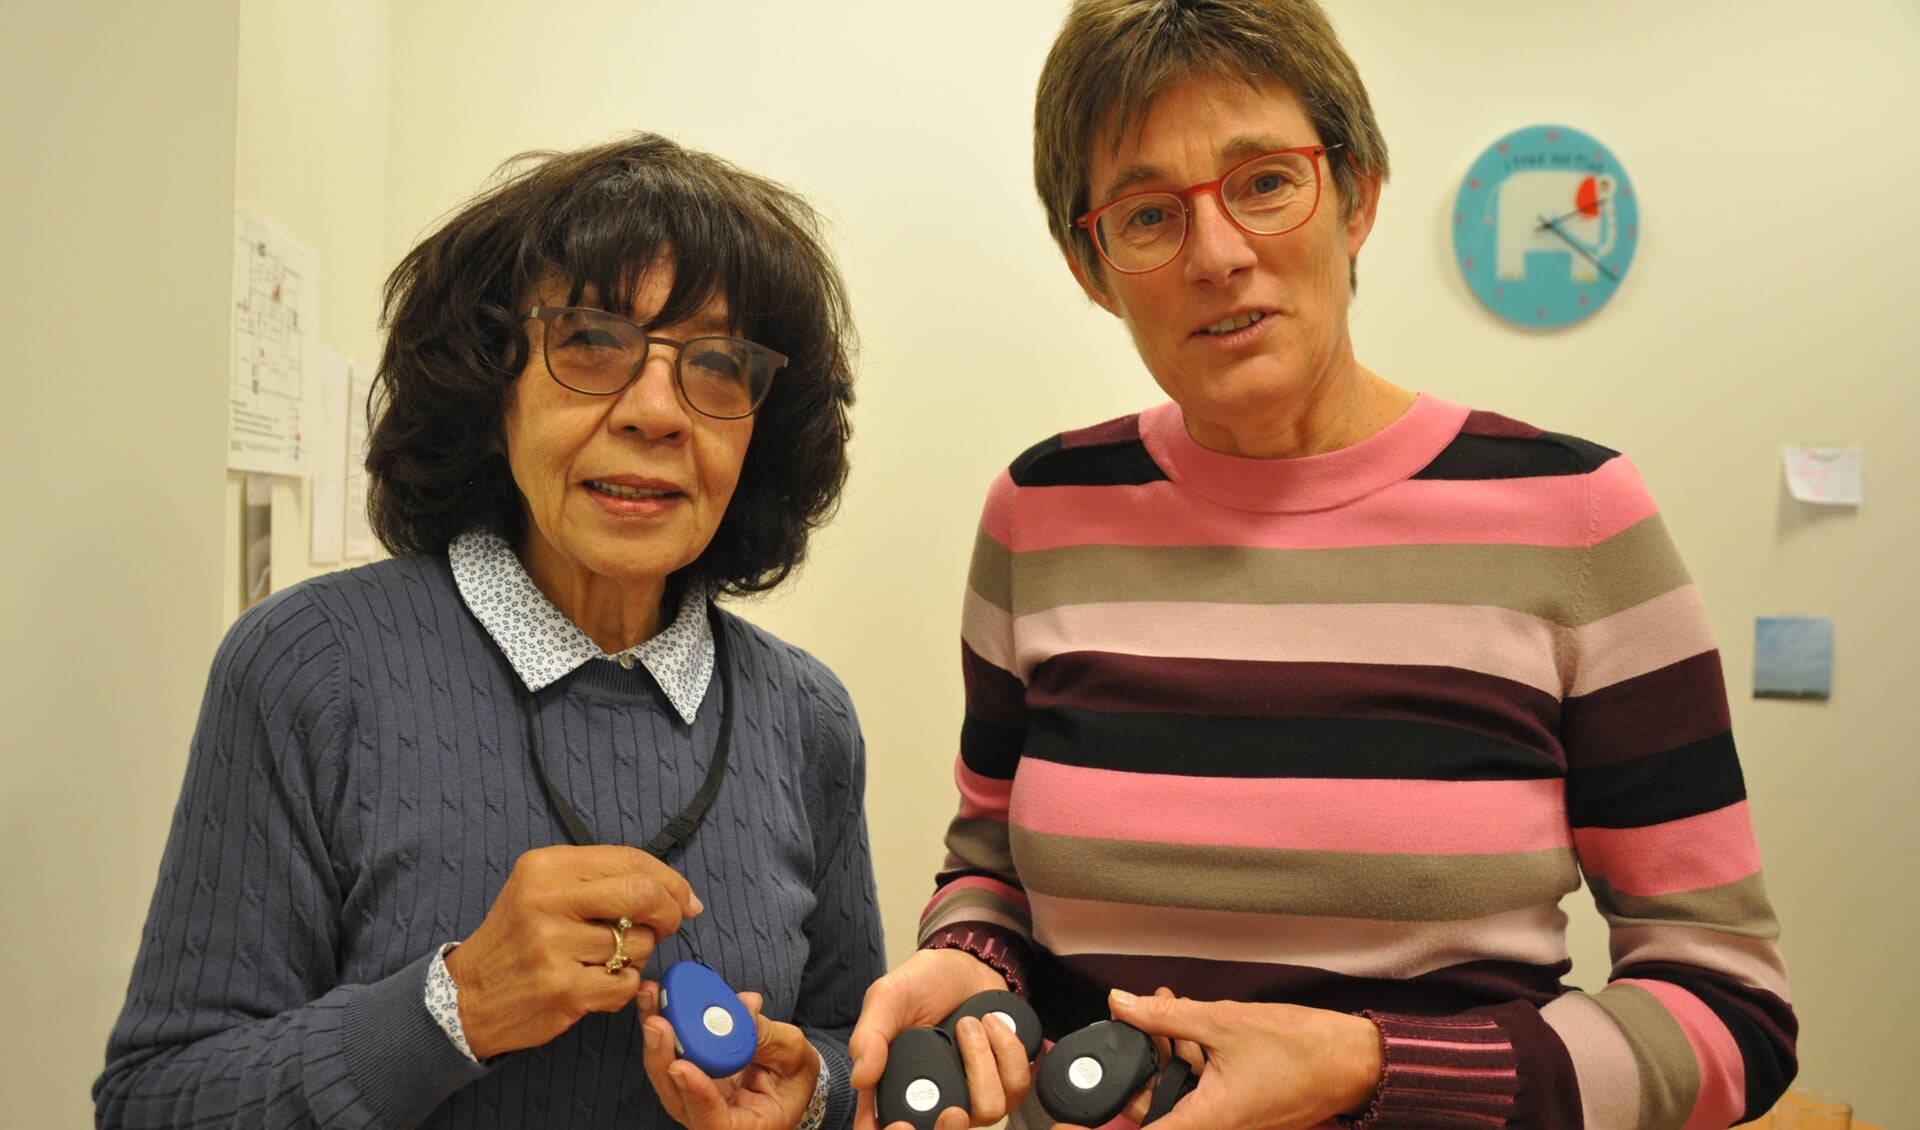 SWOS_directeur Idelette Sleurink (rechts) toont de geïnteresseerde Esther Beek de nieuwe alarmeringsapparaten die zijn uitgerust met GPS.